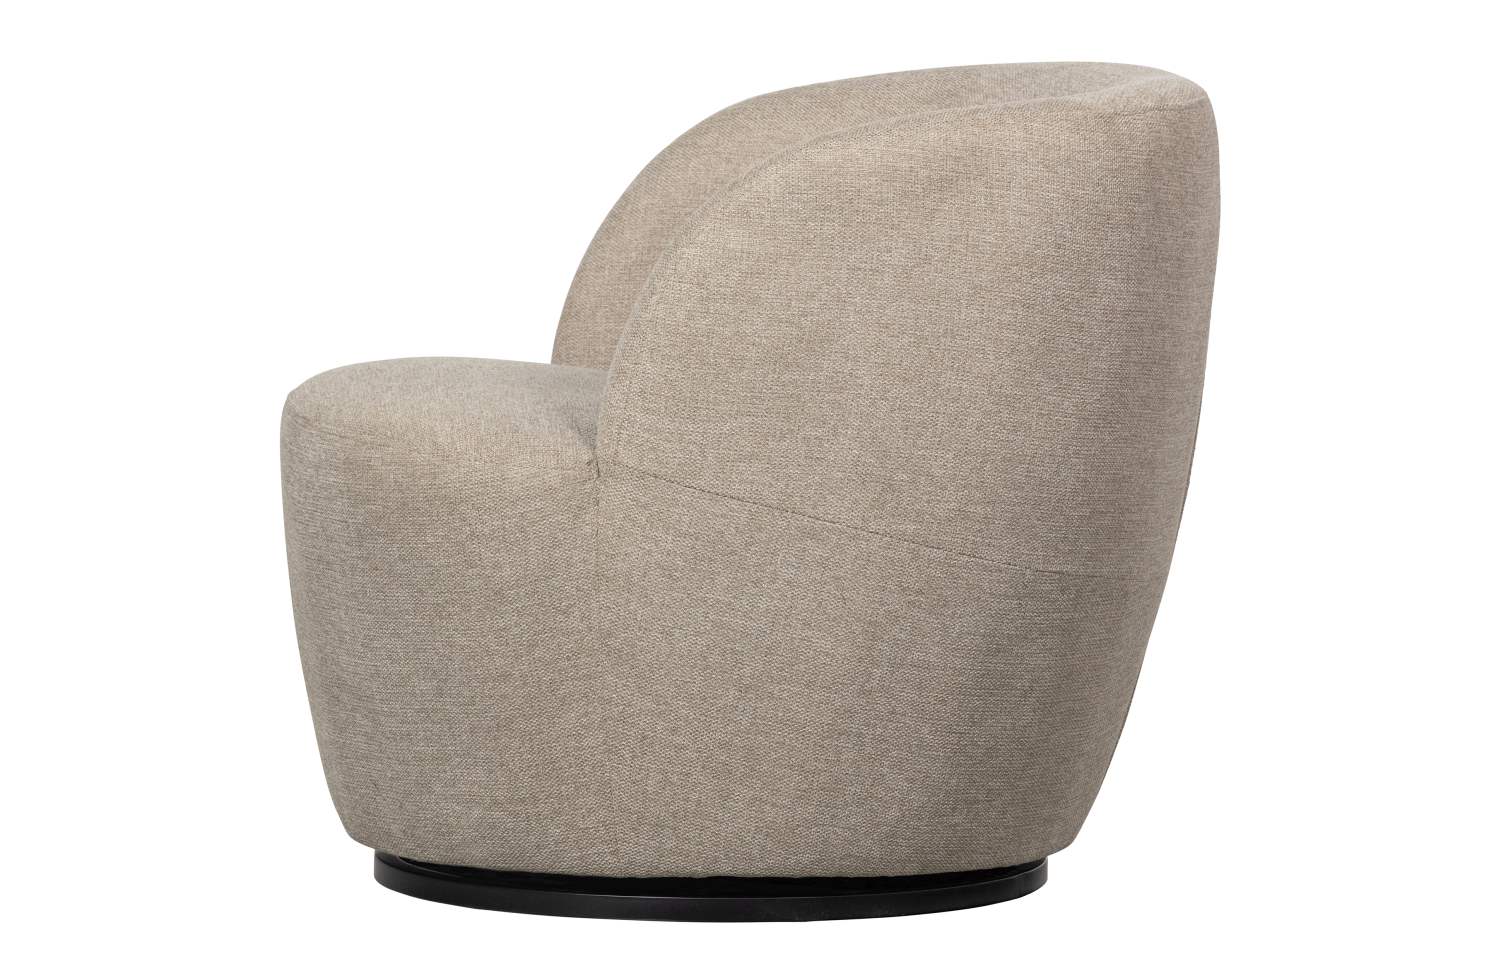 Der Drehsessel Serra überzeugt mit seinem modernen Design. Gefertigt wurde er aus Webstoff, welcher einen Sand Farbton besitzt. Das Gestell ist aus Metall und  hat eine schwarze Farbe. Die Sitzhöhe des Sessels beträgt 42 cm.